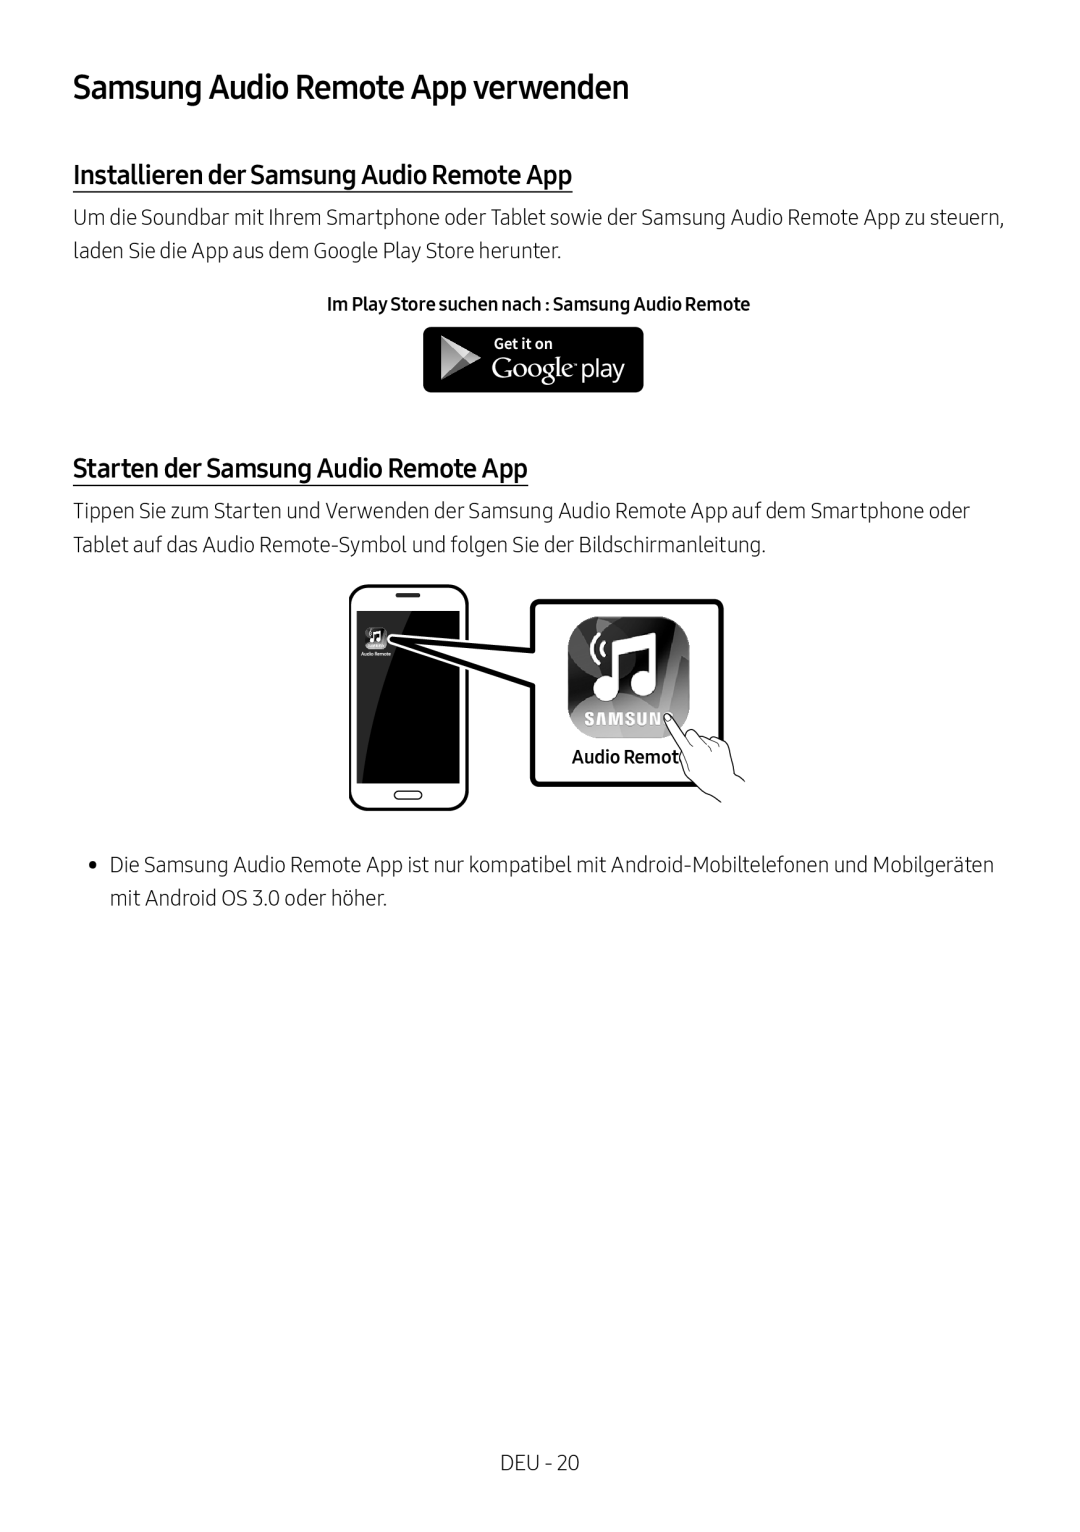 Samsung HW-M450/ZG, HW-M450/EN, HW-M450/ZF Samsung Audio Remote App verwenden, Installieren der Samsung Audio Remote App 